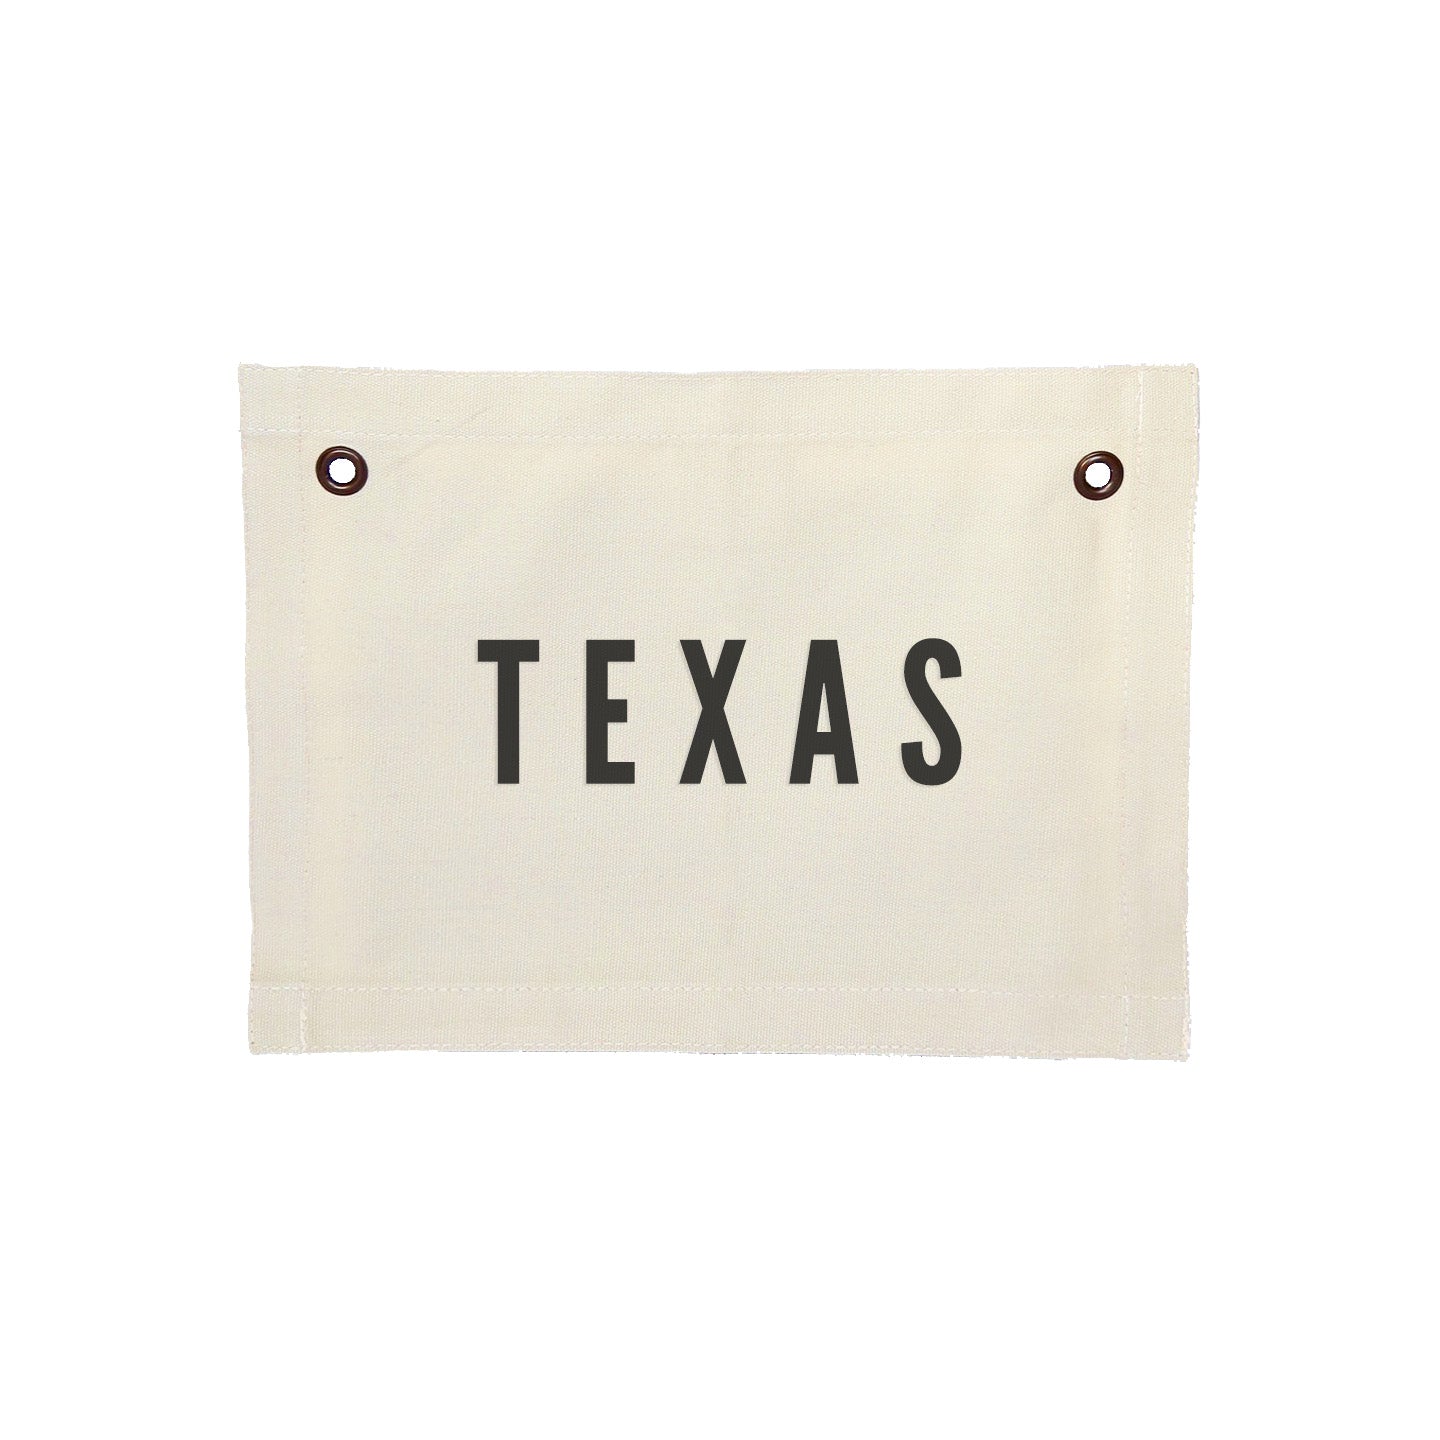 Texas Small Canvas Flag